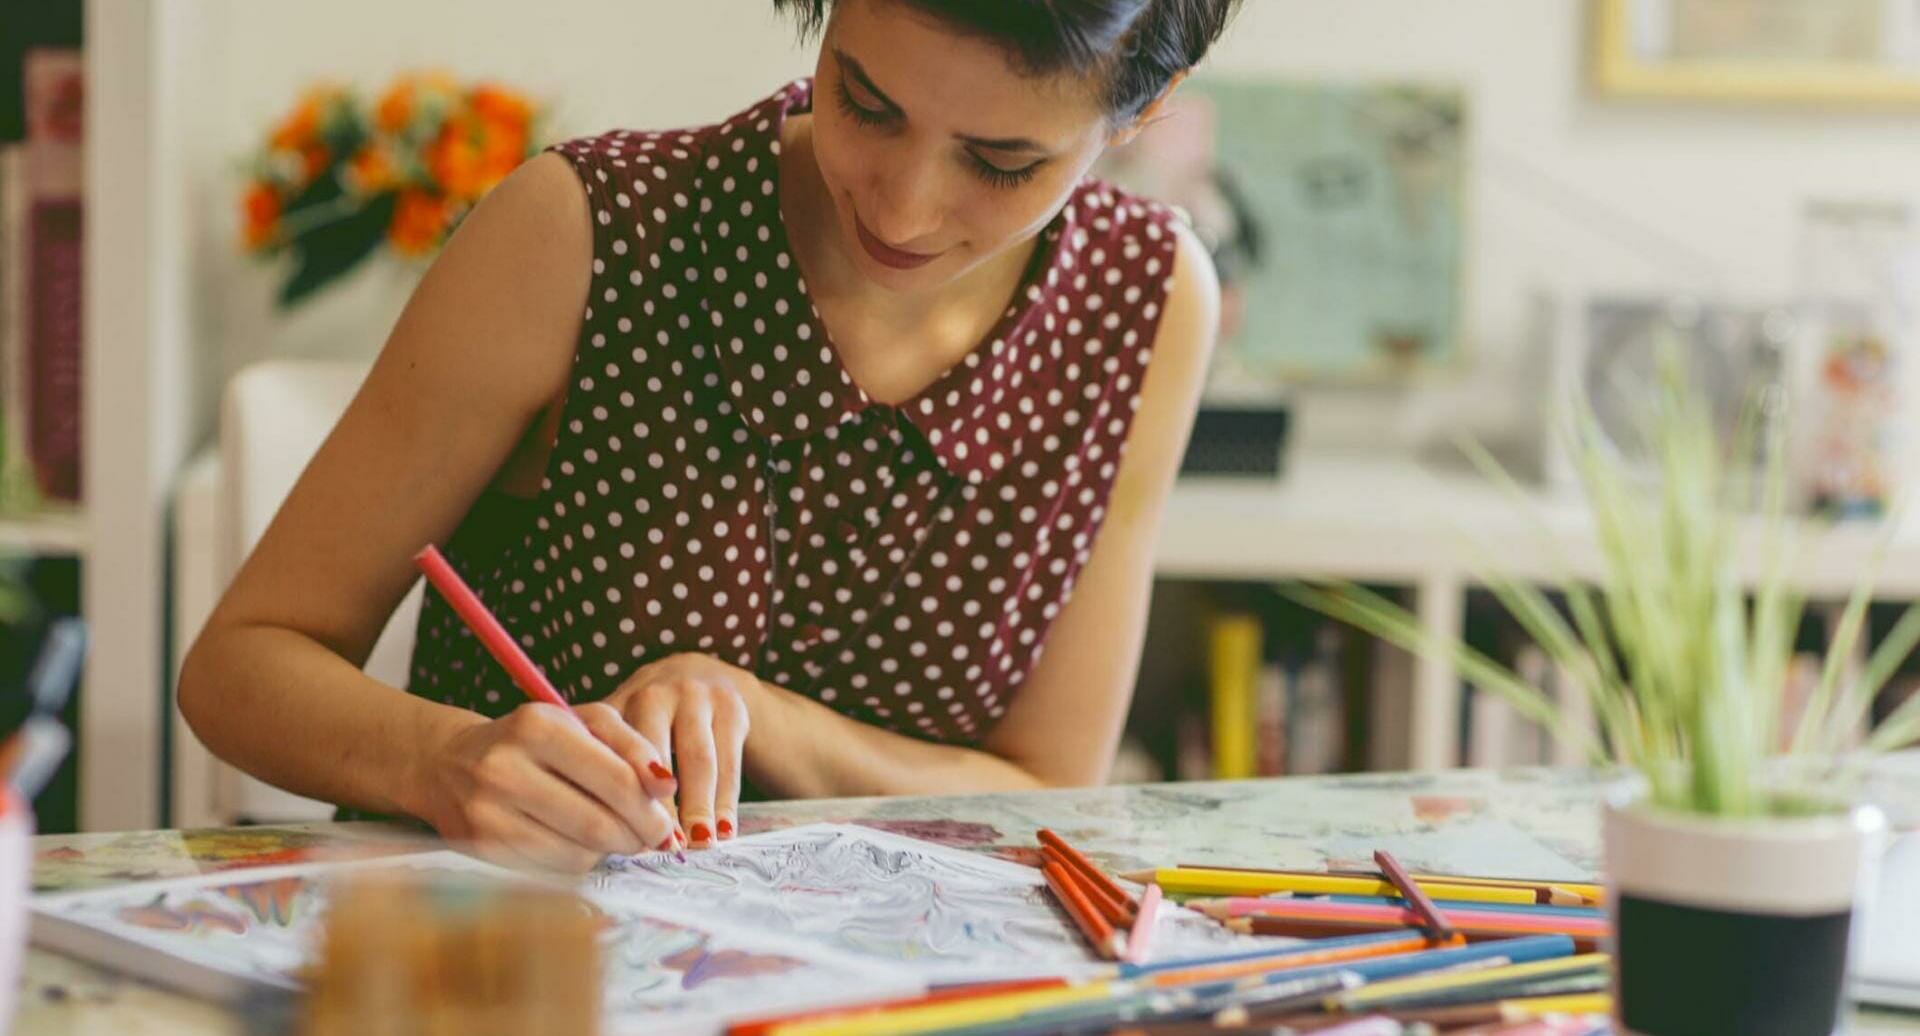 Clessidra.libro da colorare antistress per bambini e adulti.